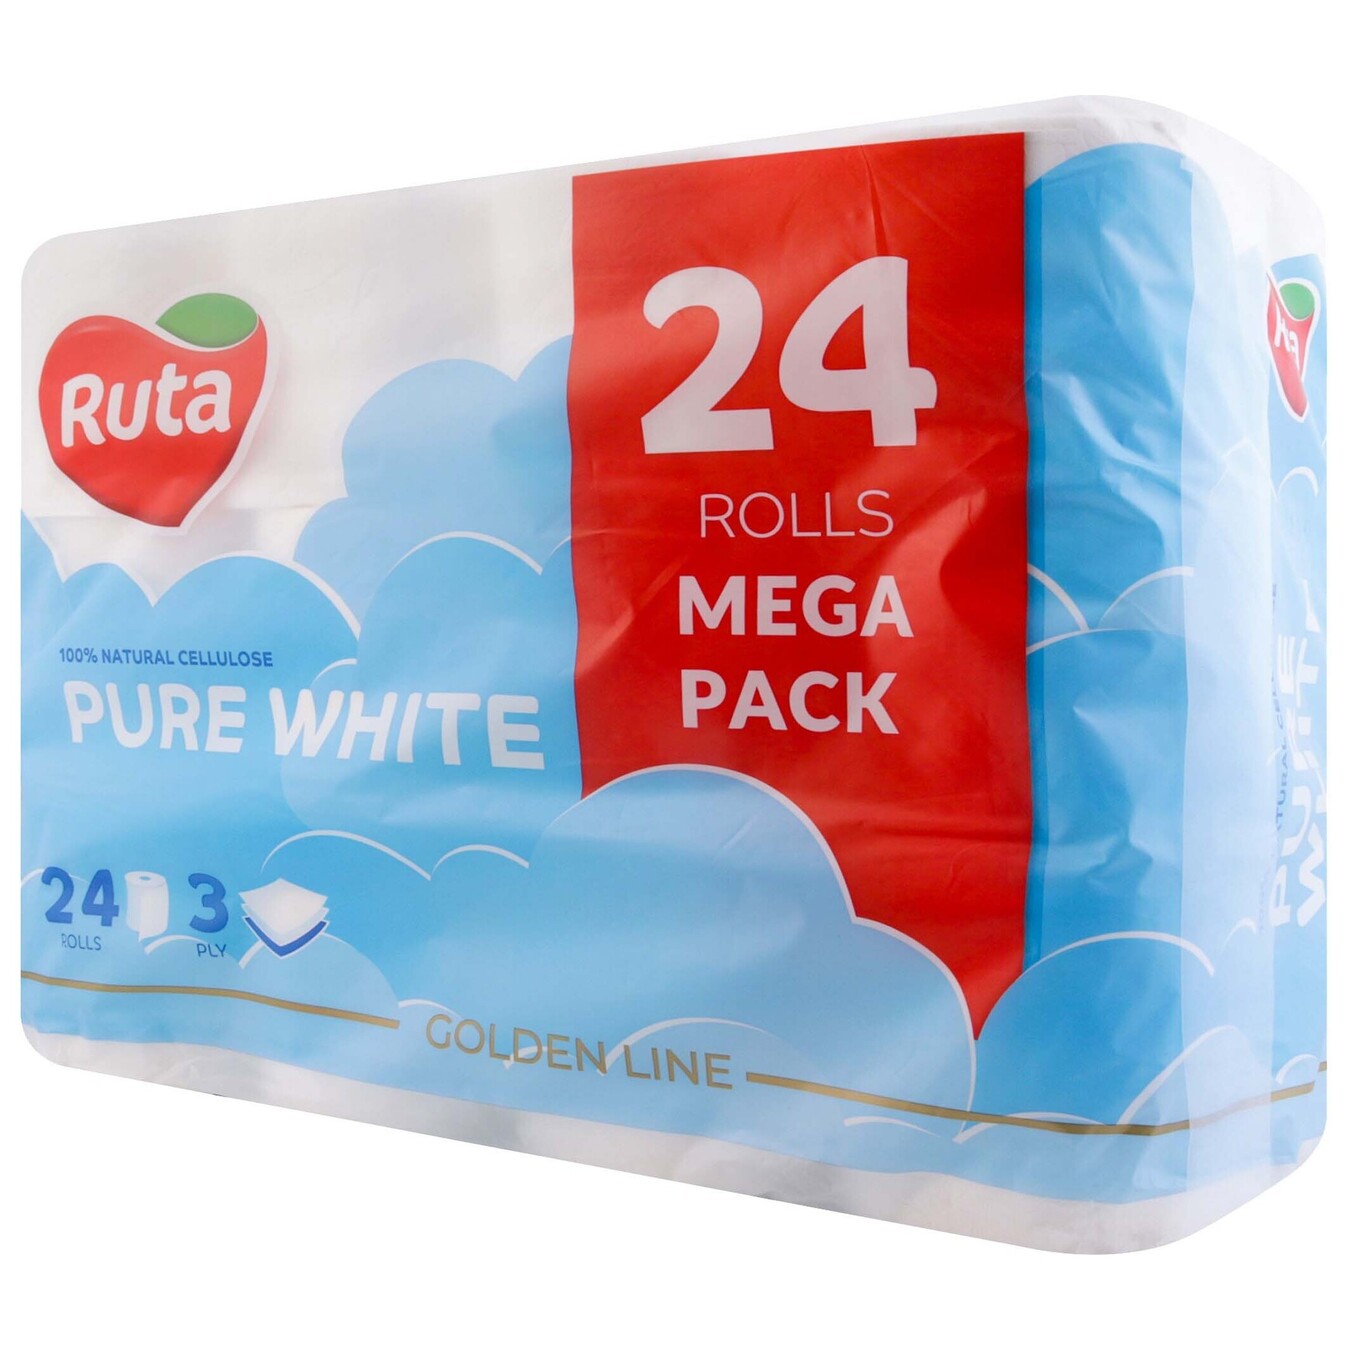 Ruta Pure White Premium Three-Ply Toilet Paper 24pcs 2